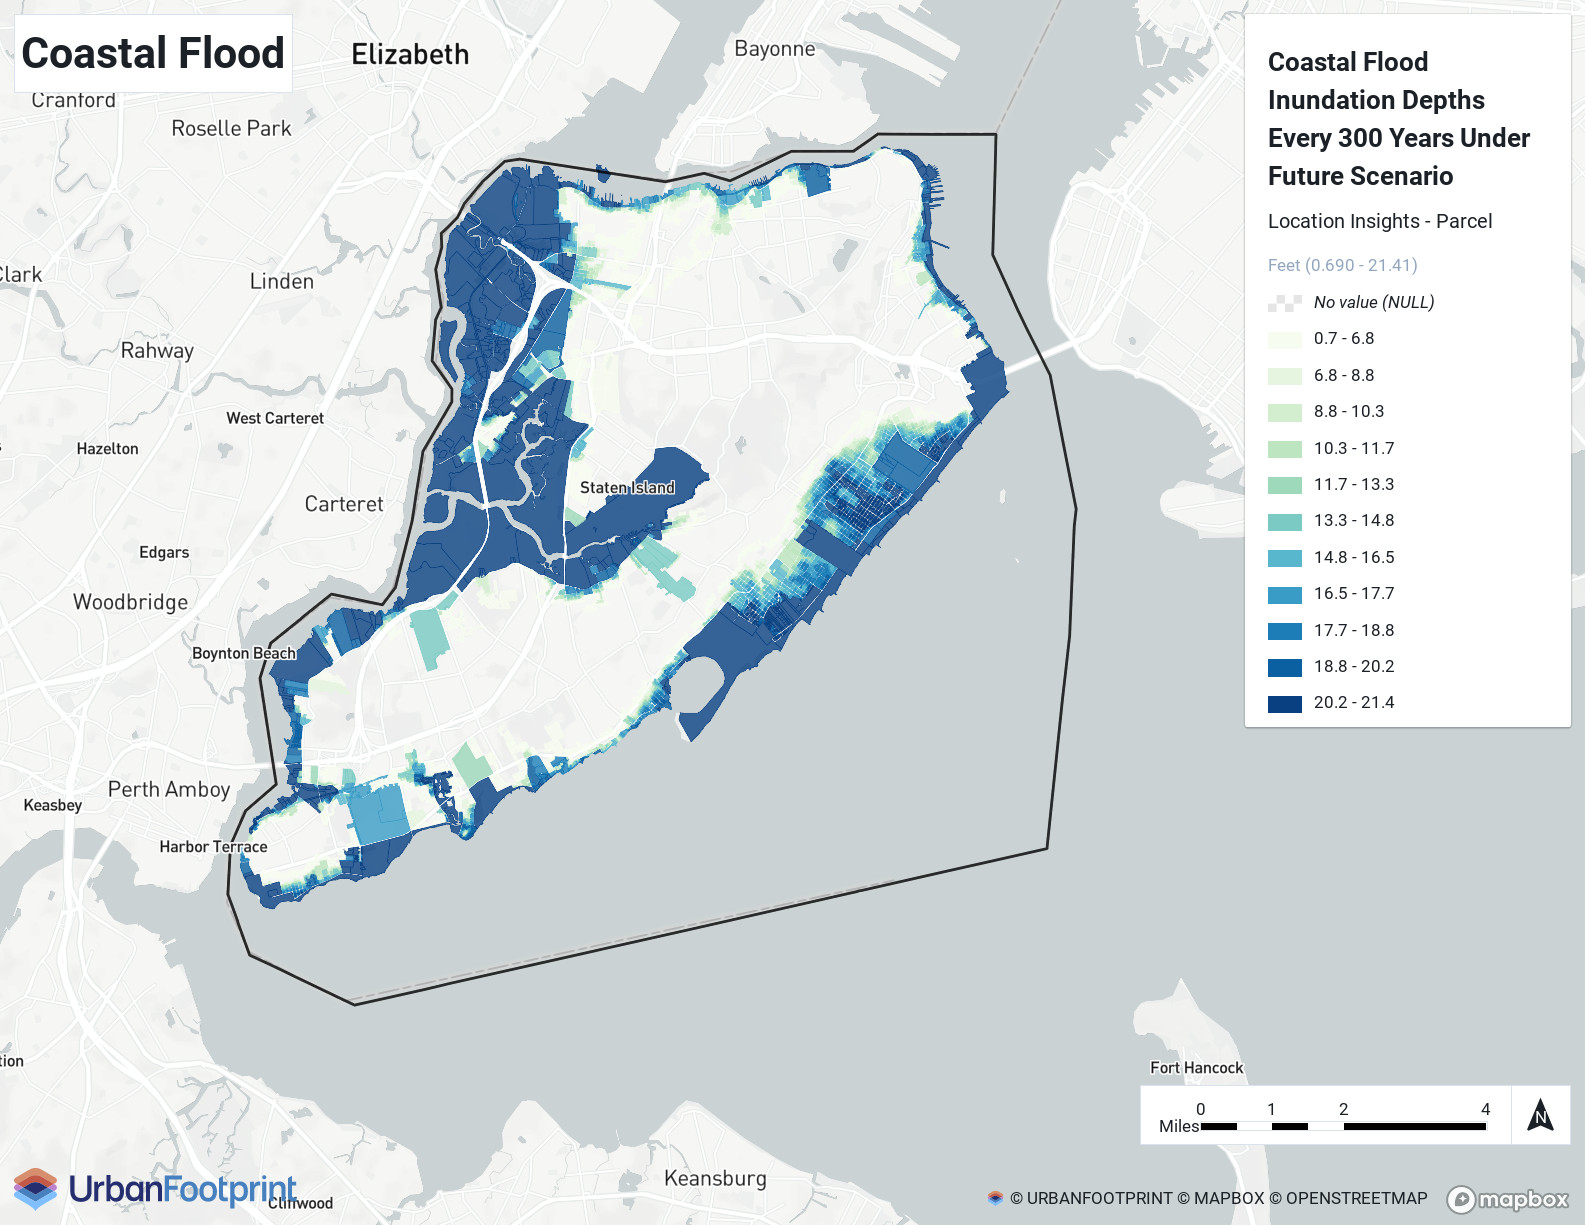 Analyst Example - Coastal Flood